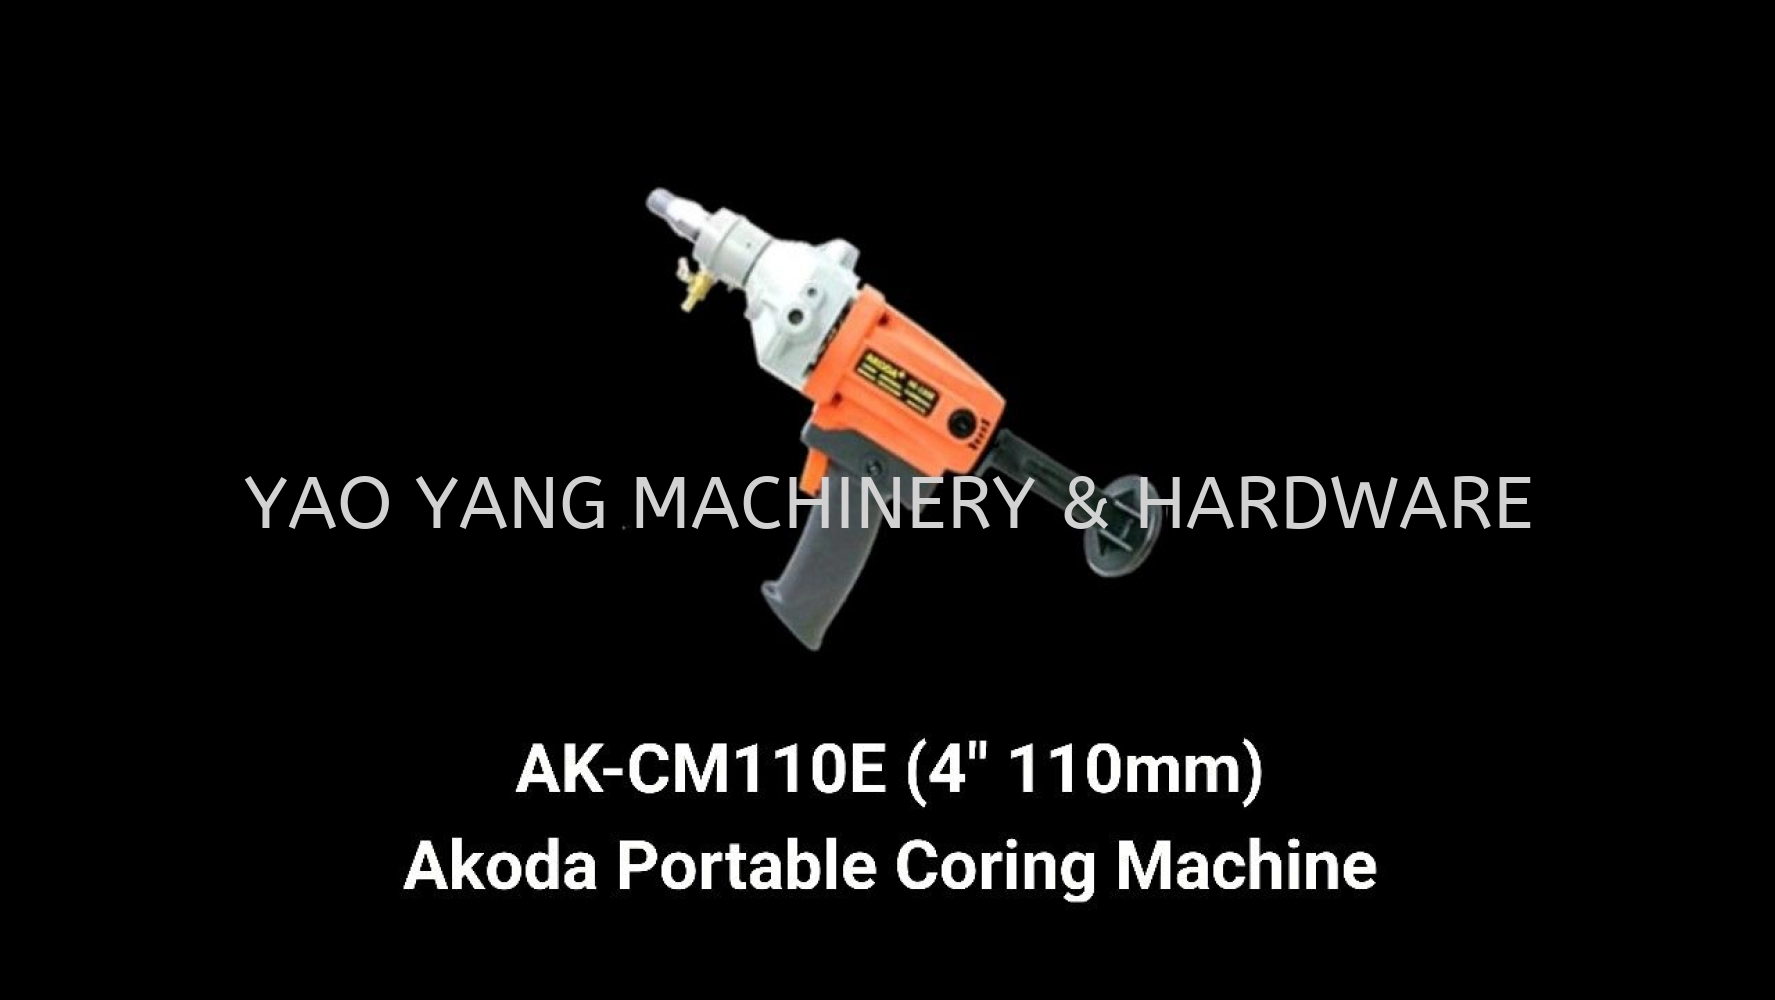 AK-CM110E Akoda Portable Diamond Coring Machine (4" 110mm)